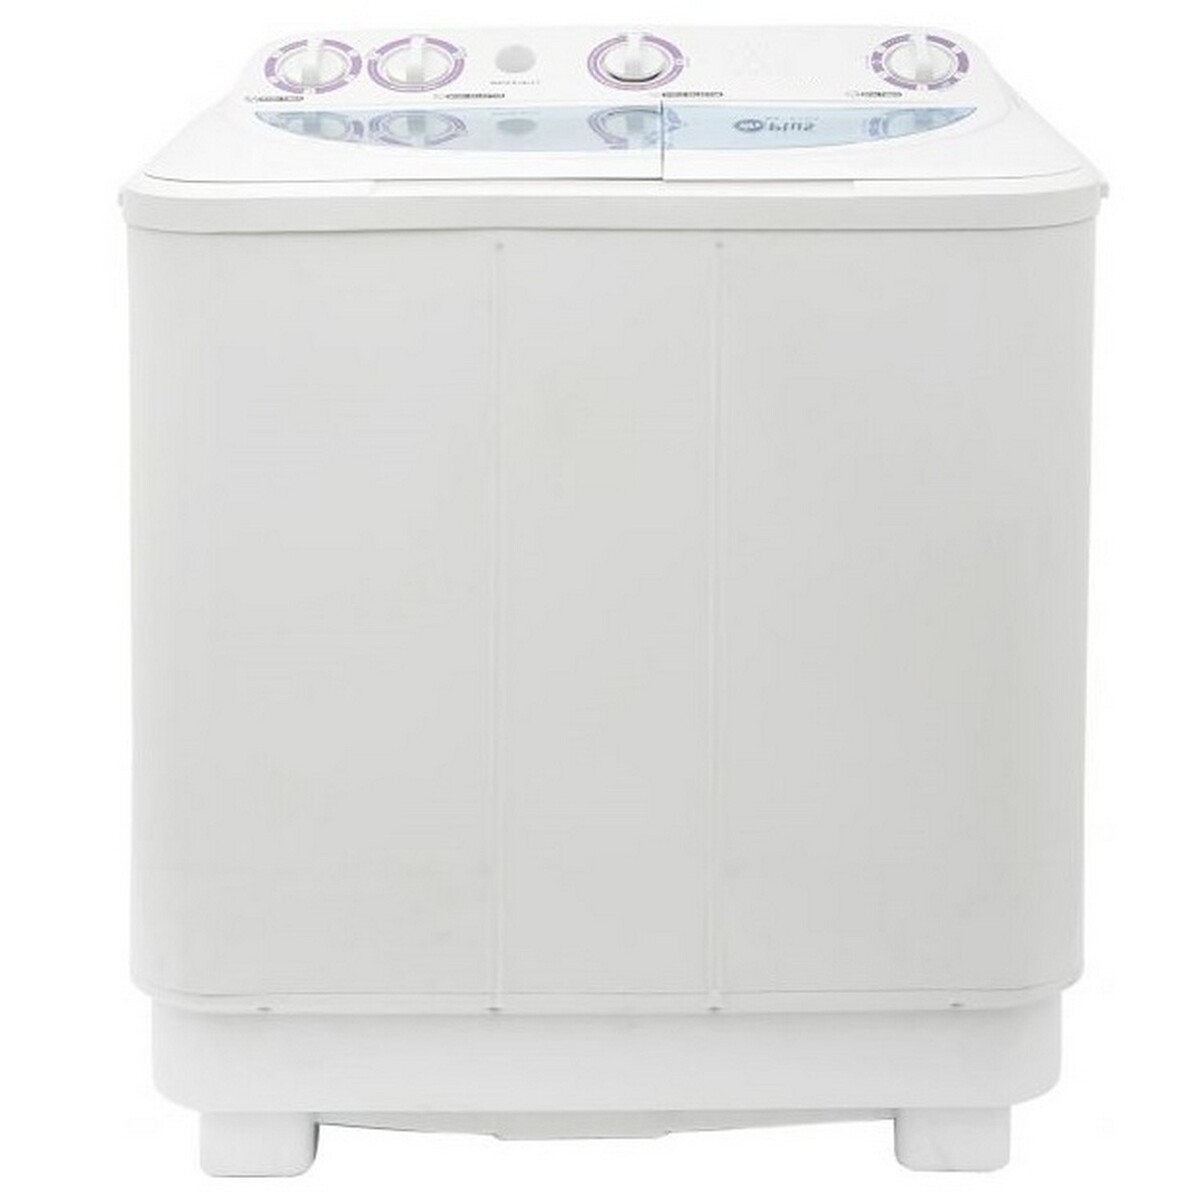 Mr Light Semi Automatic  Washing Machine 2102 6.5Kg